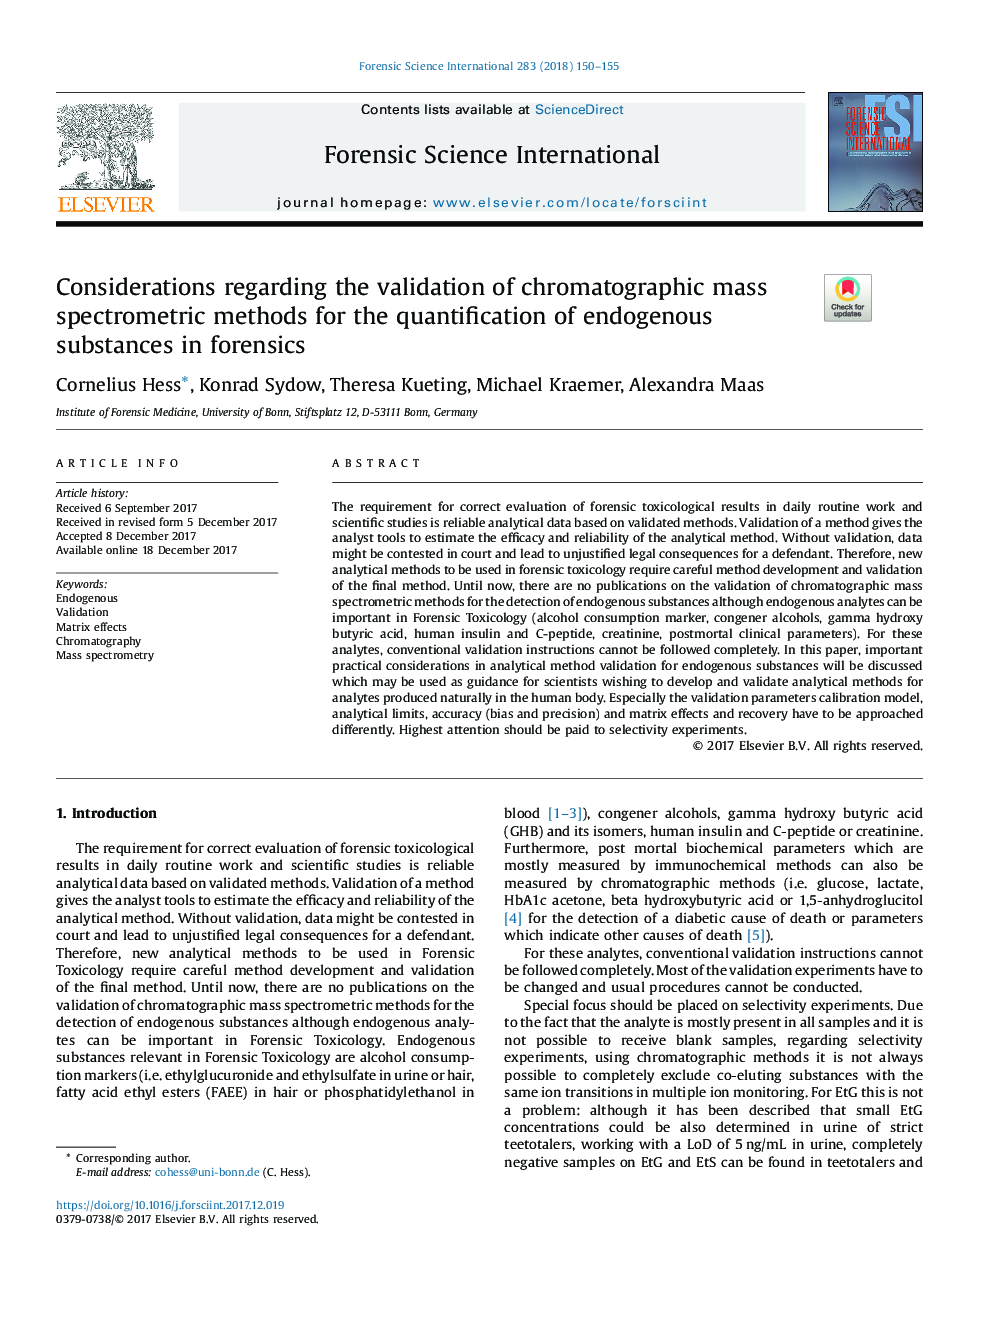 ملاحظات در مورد اعتبار سنجی روش های اسپکترومتر جرمی کروماتوگرافی برای اندازه گیری مواد غدد درونزای در پزشکی قانونی 